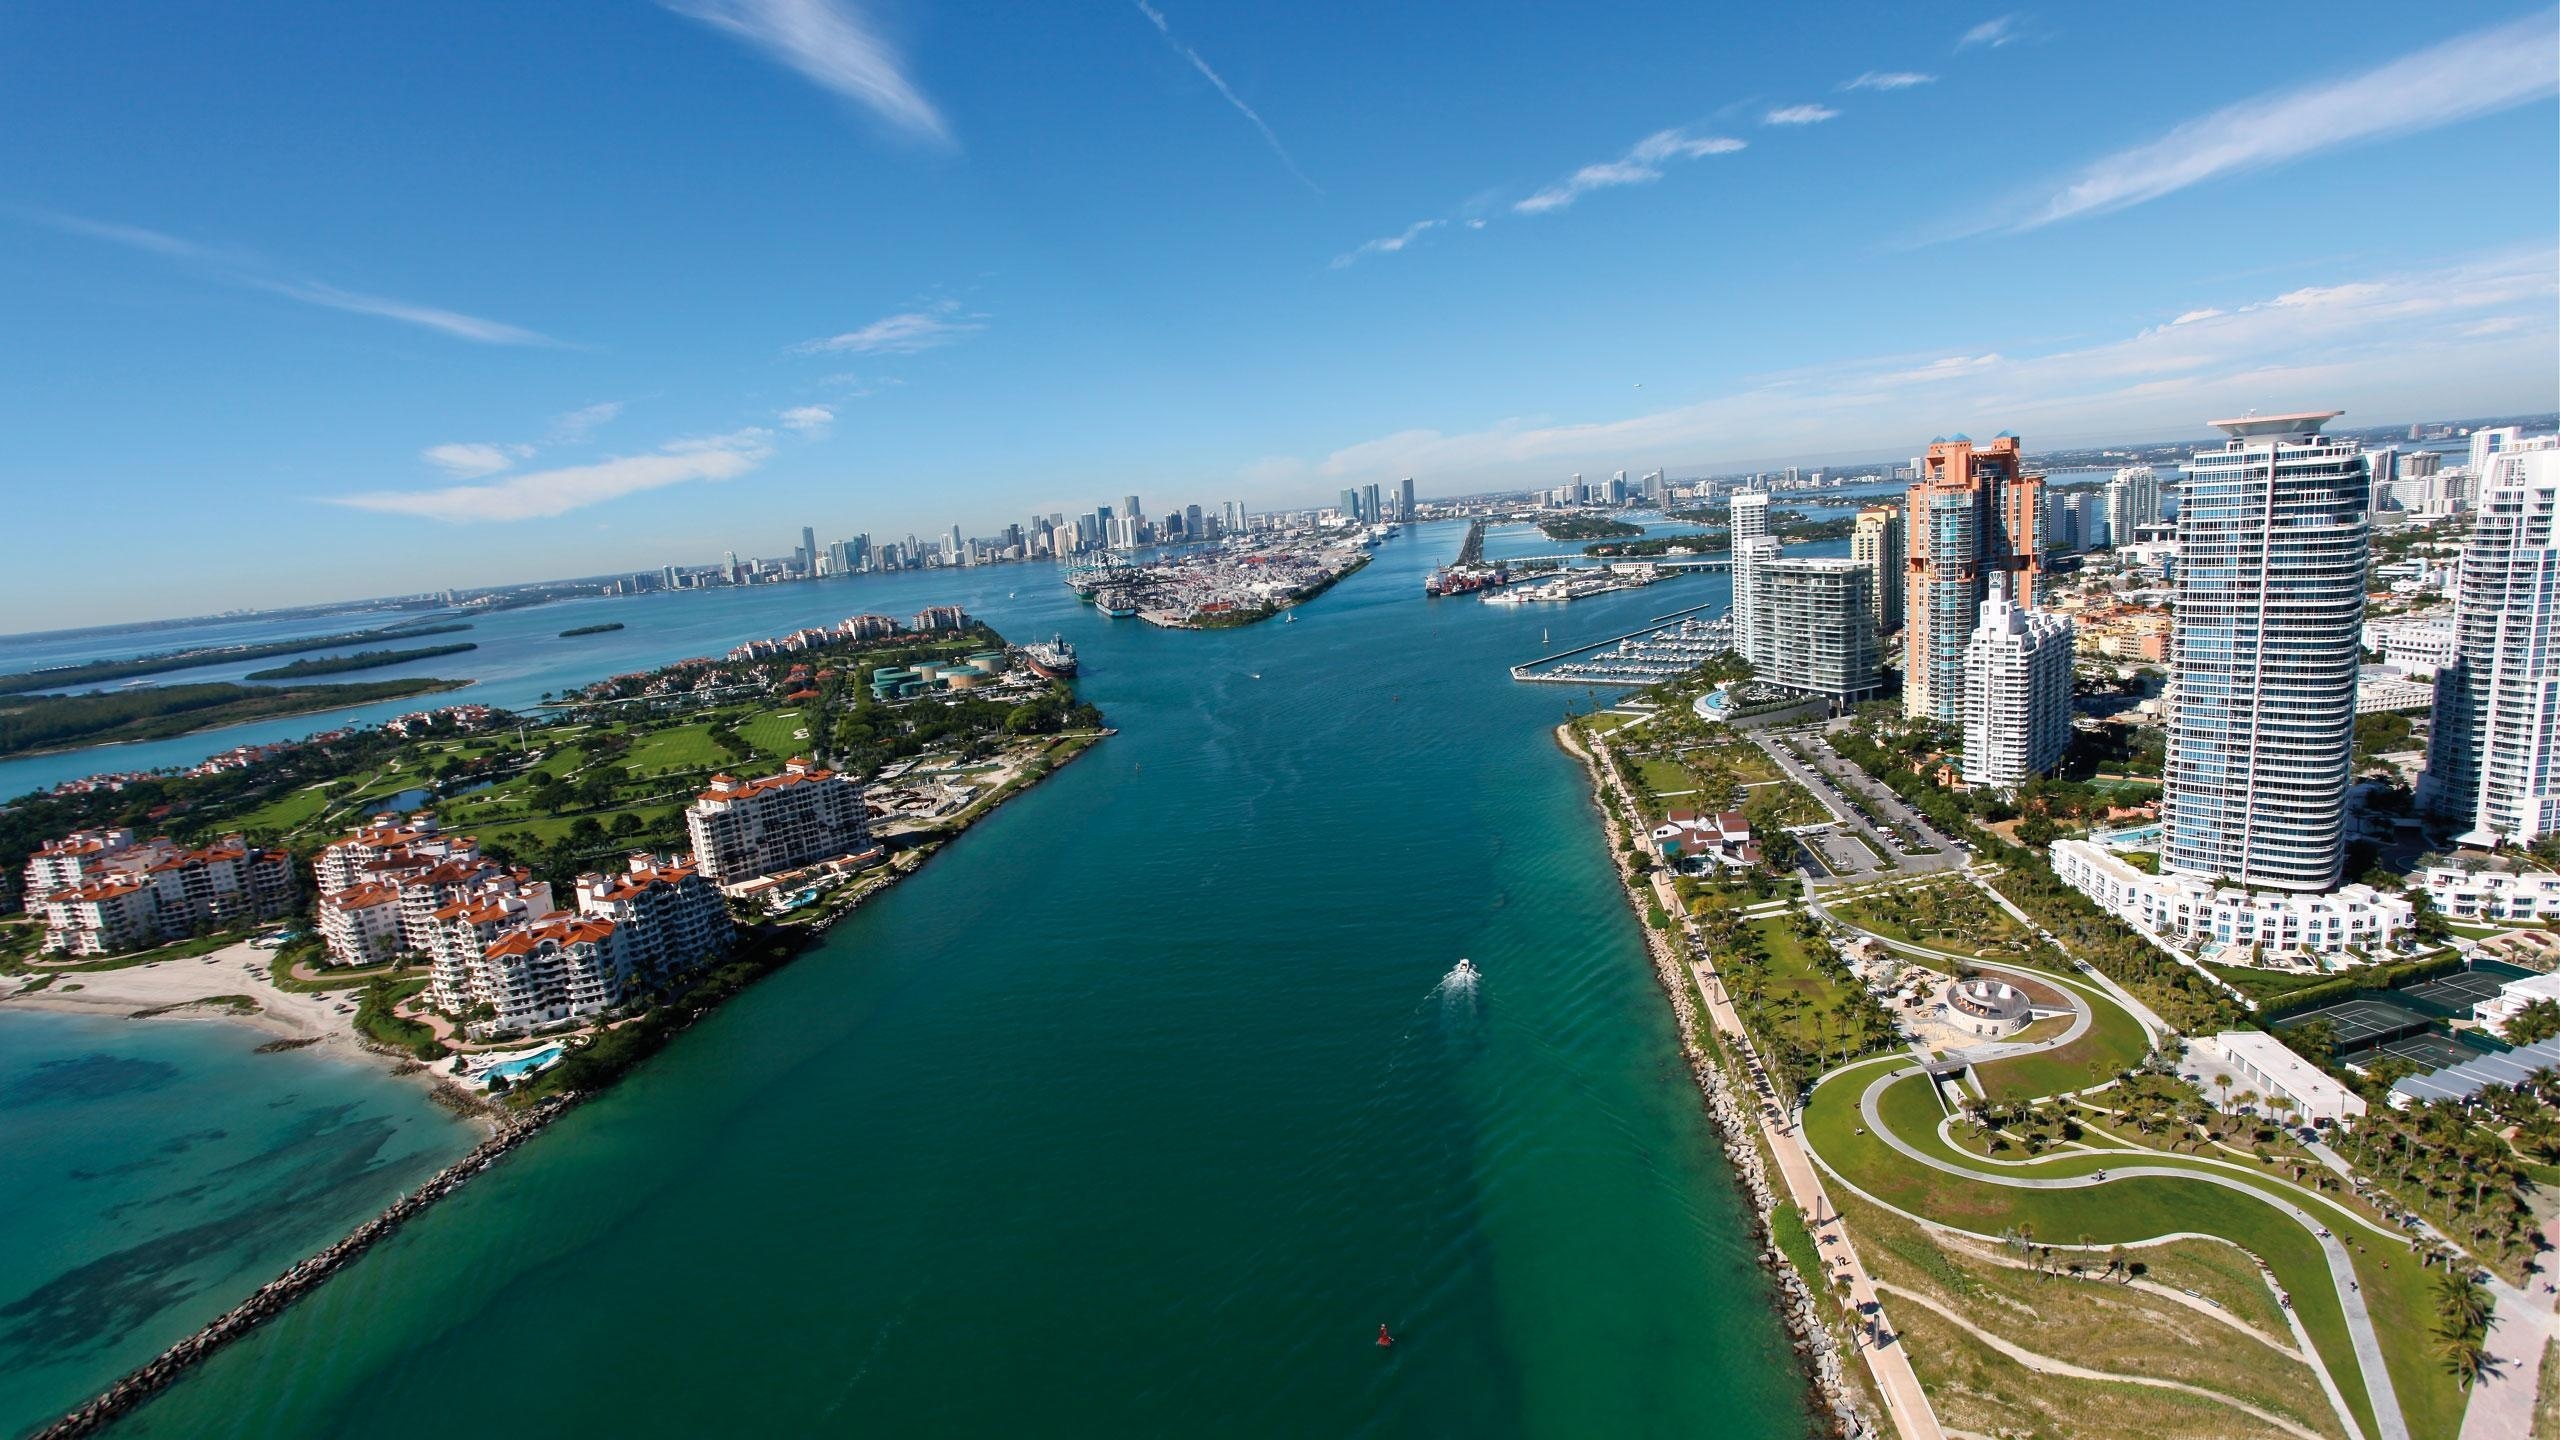 General 2560x1440 Miami Florida cityscape sea aerial view